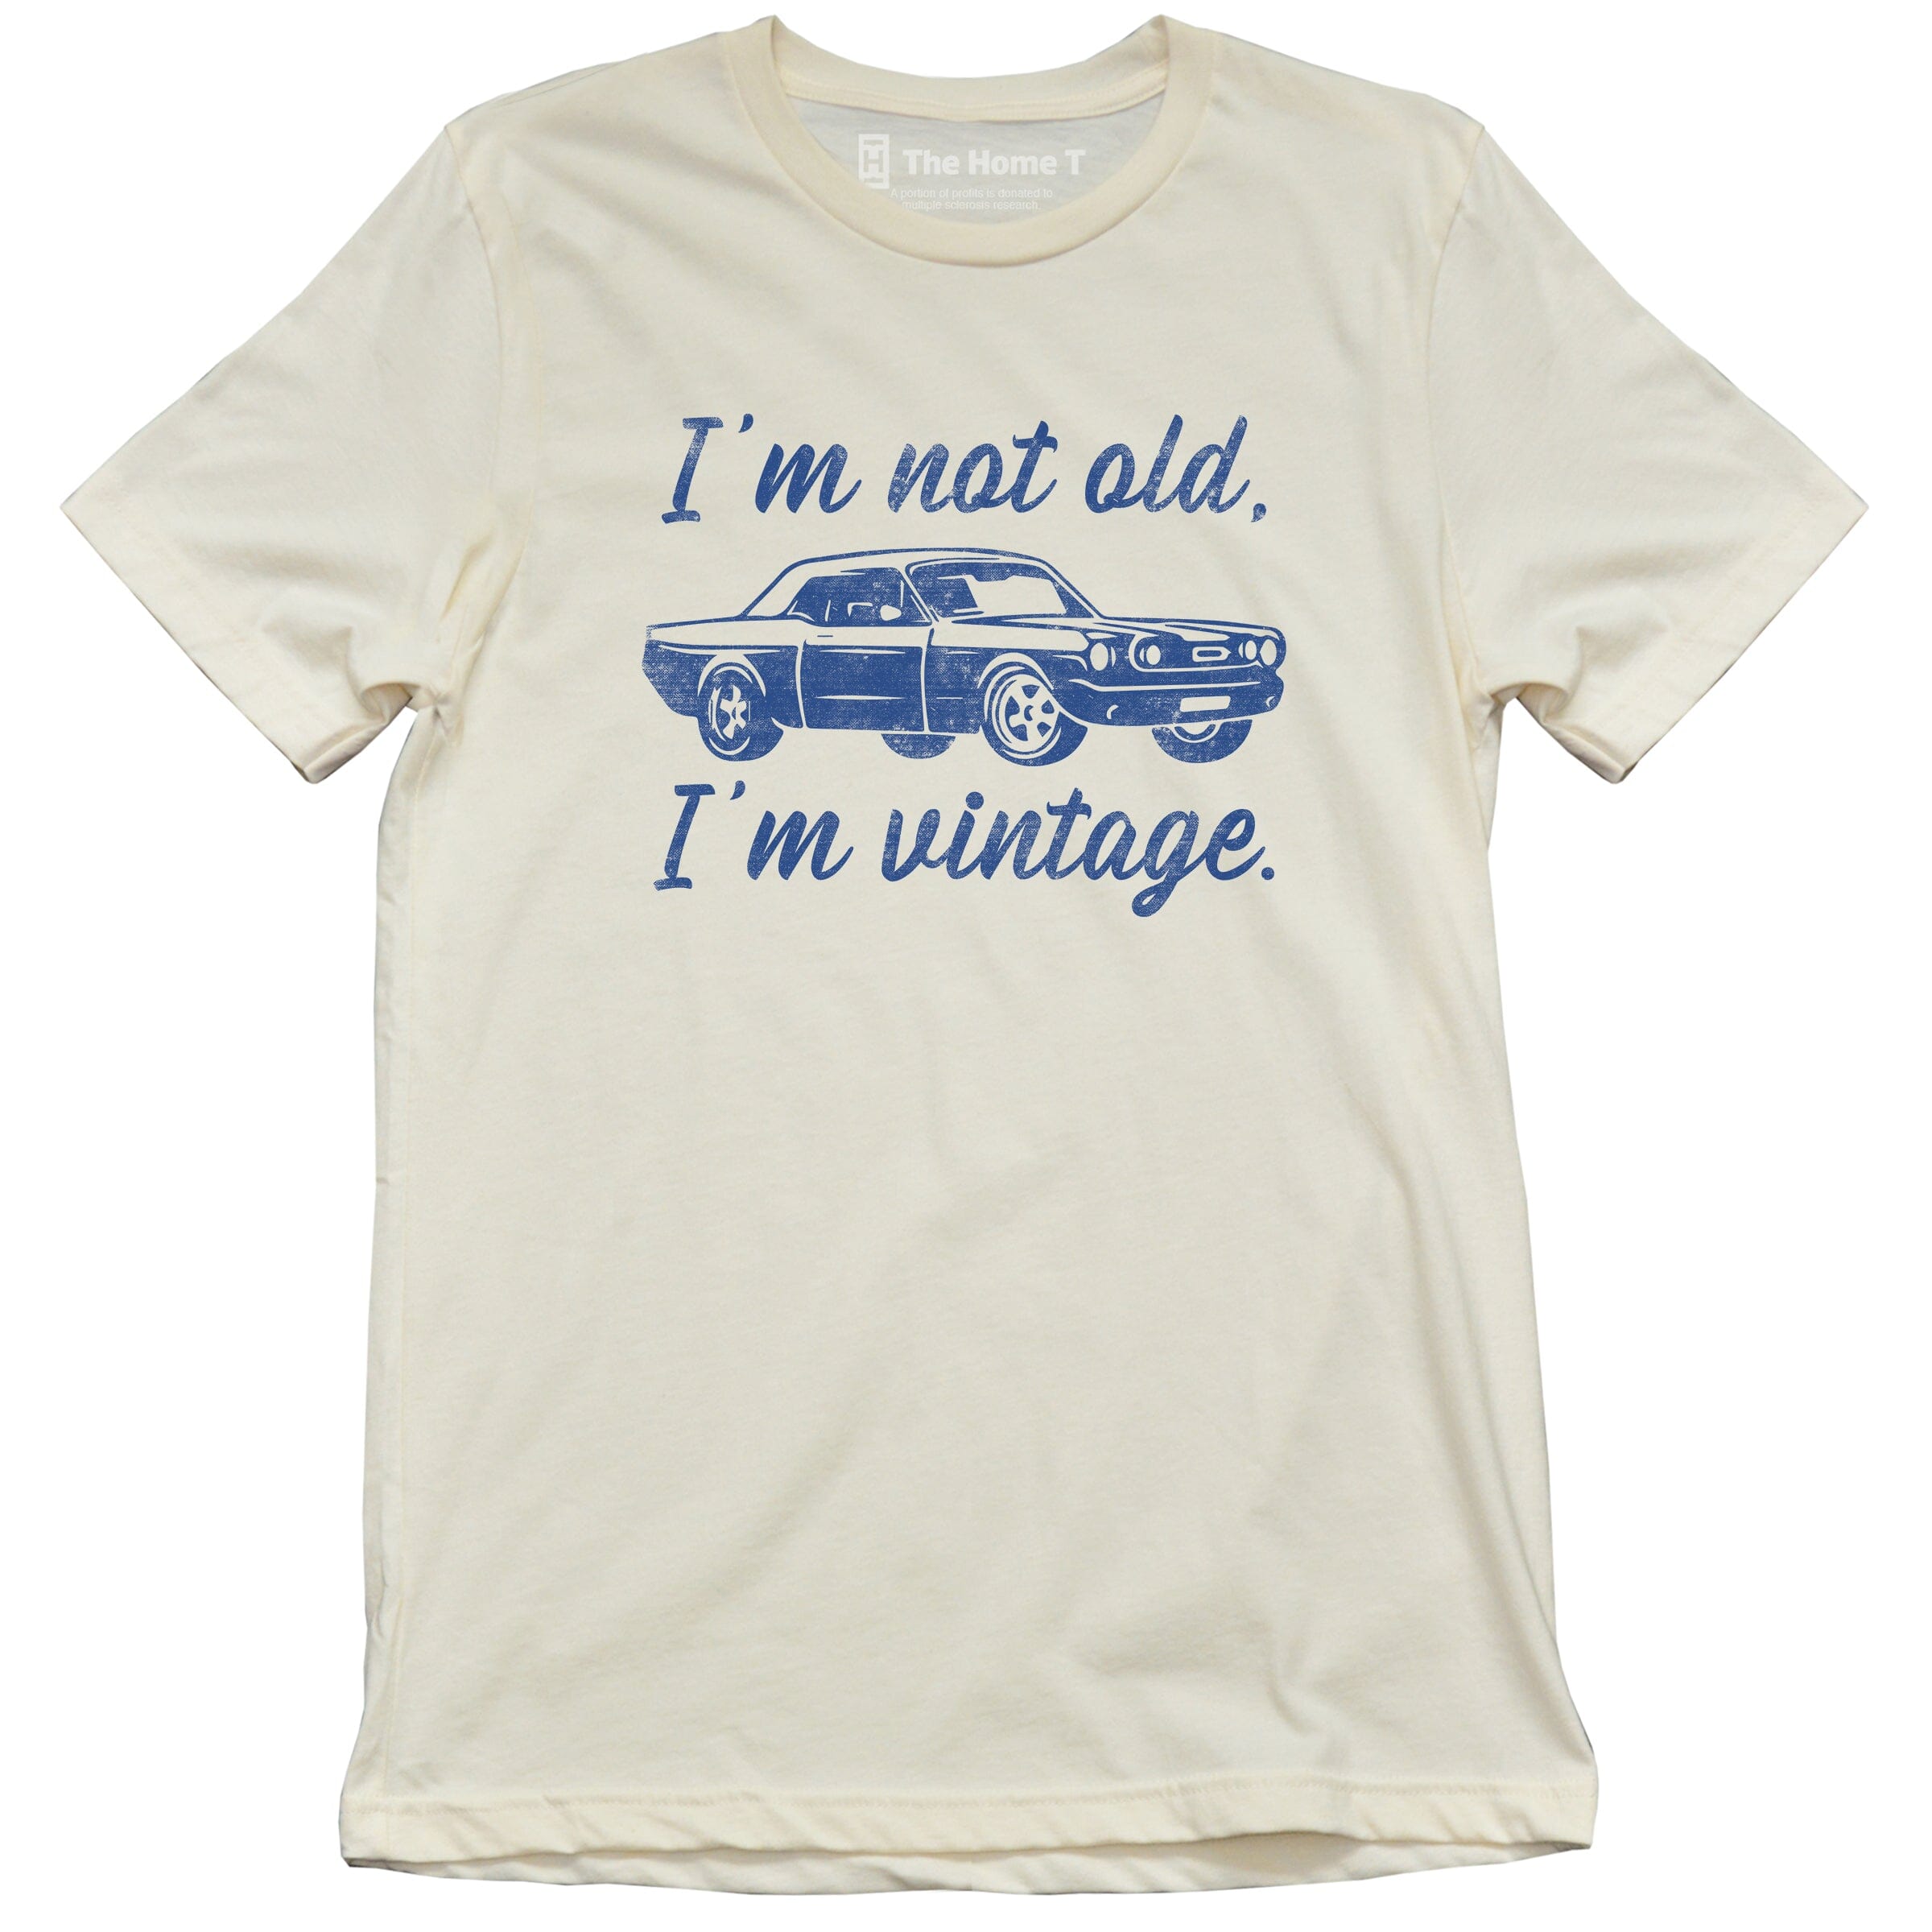 I'm Not Old. I'm Vintage.